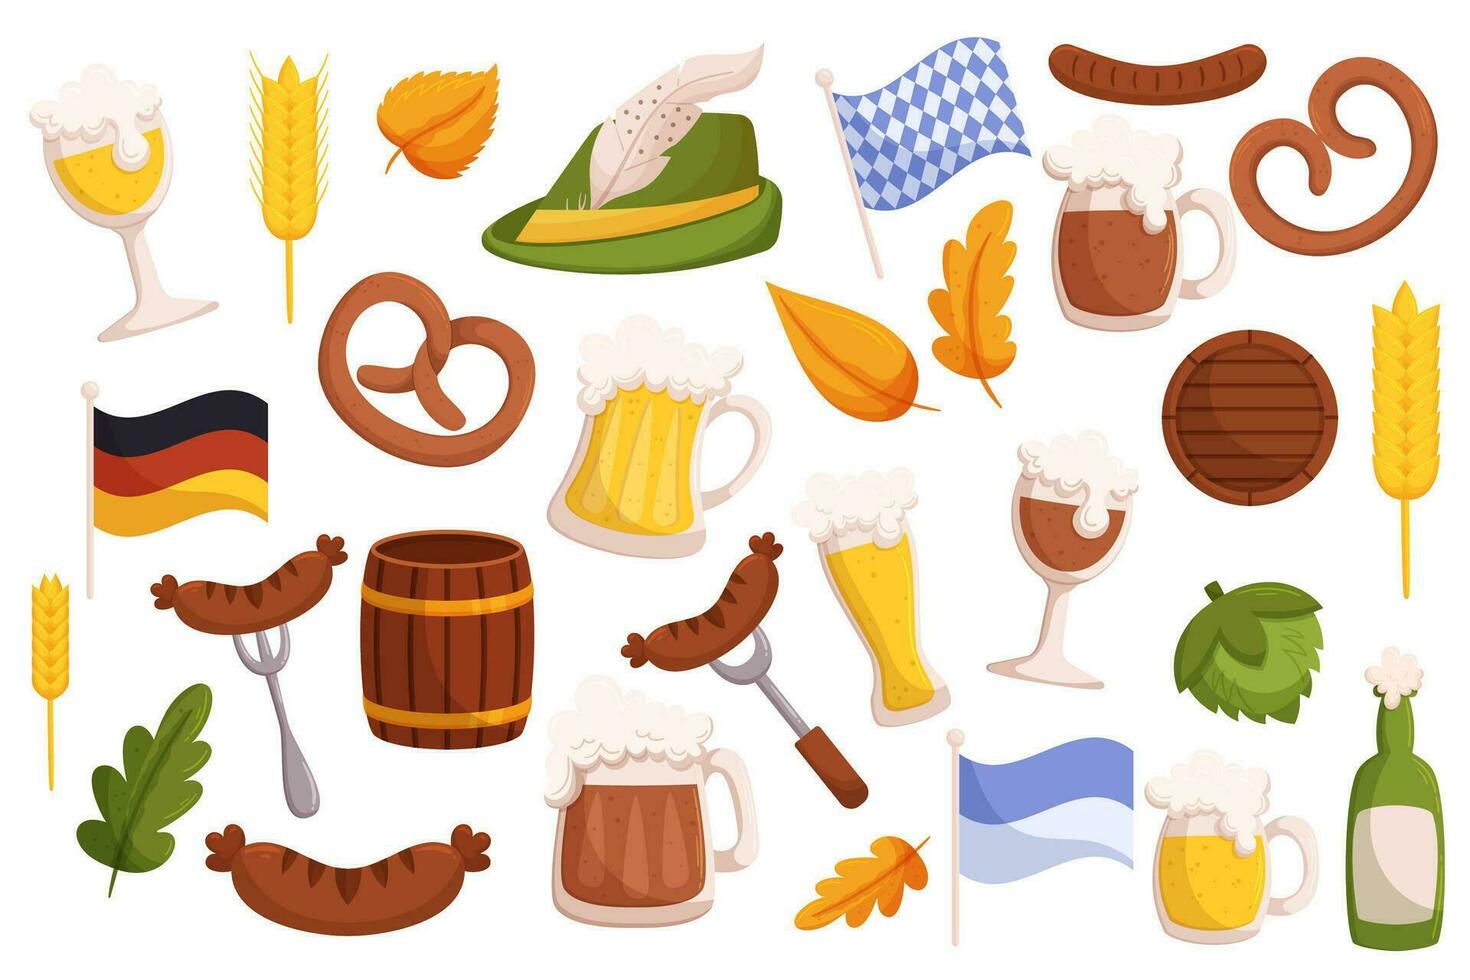 bier festival elementen verzameling. reeks van Duitse traditioneel fest voorwerpen - bier glas mok, gegrild worstjes, krakeling, vlaggen in traditioneel kleuren, Tirools hoed met veerkracht. vector